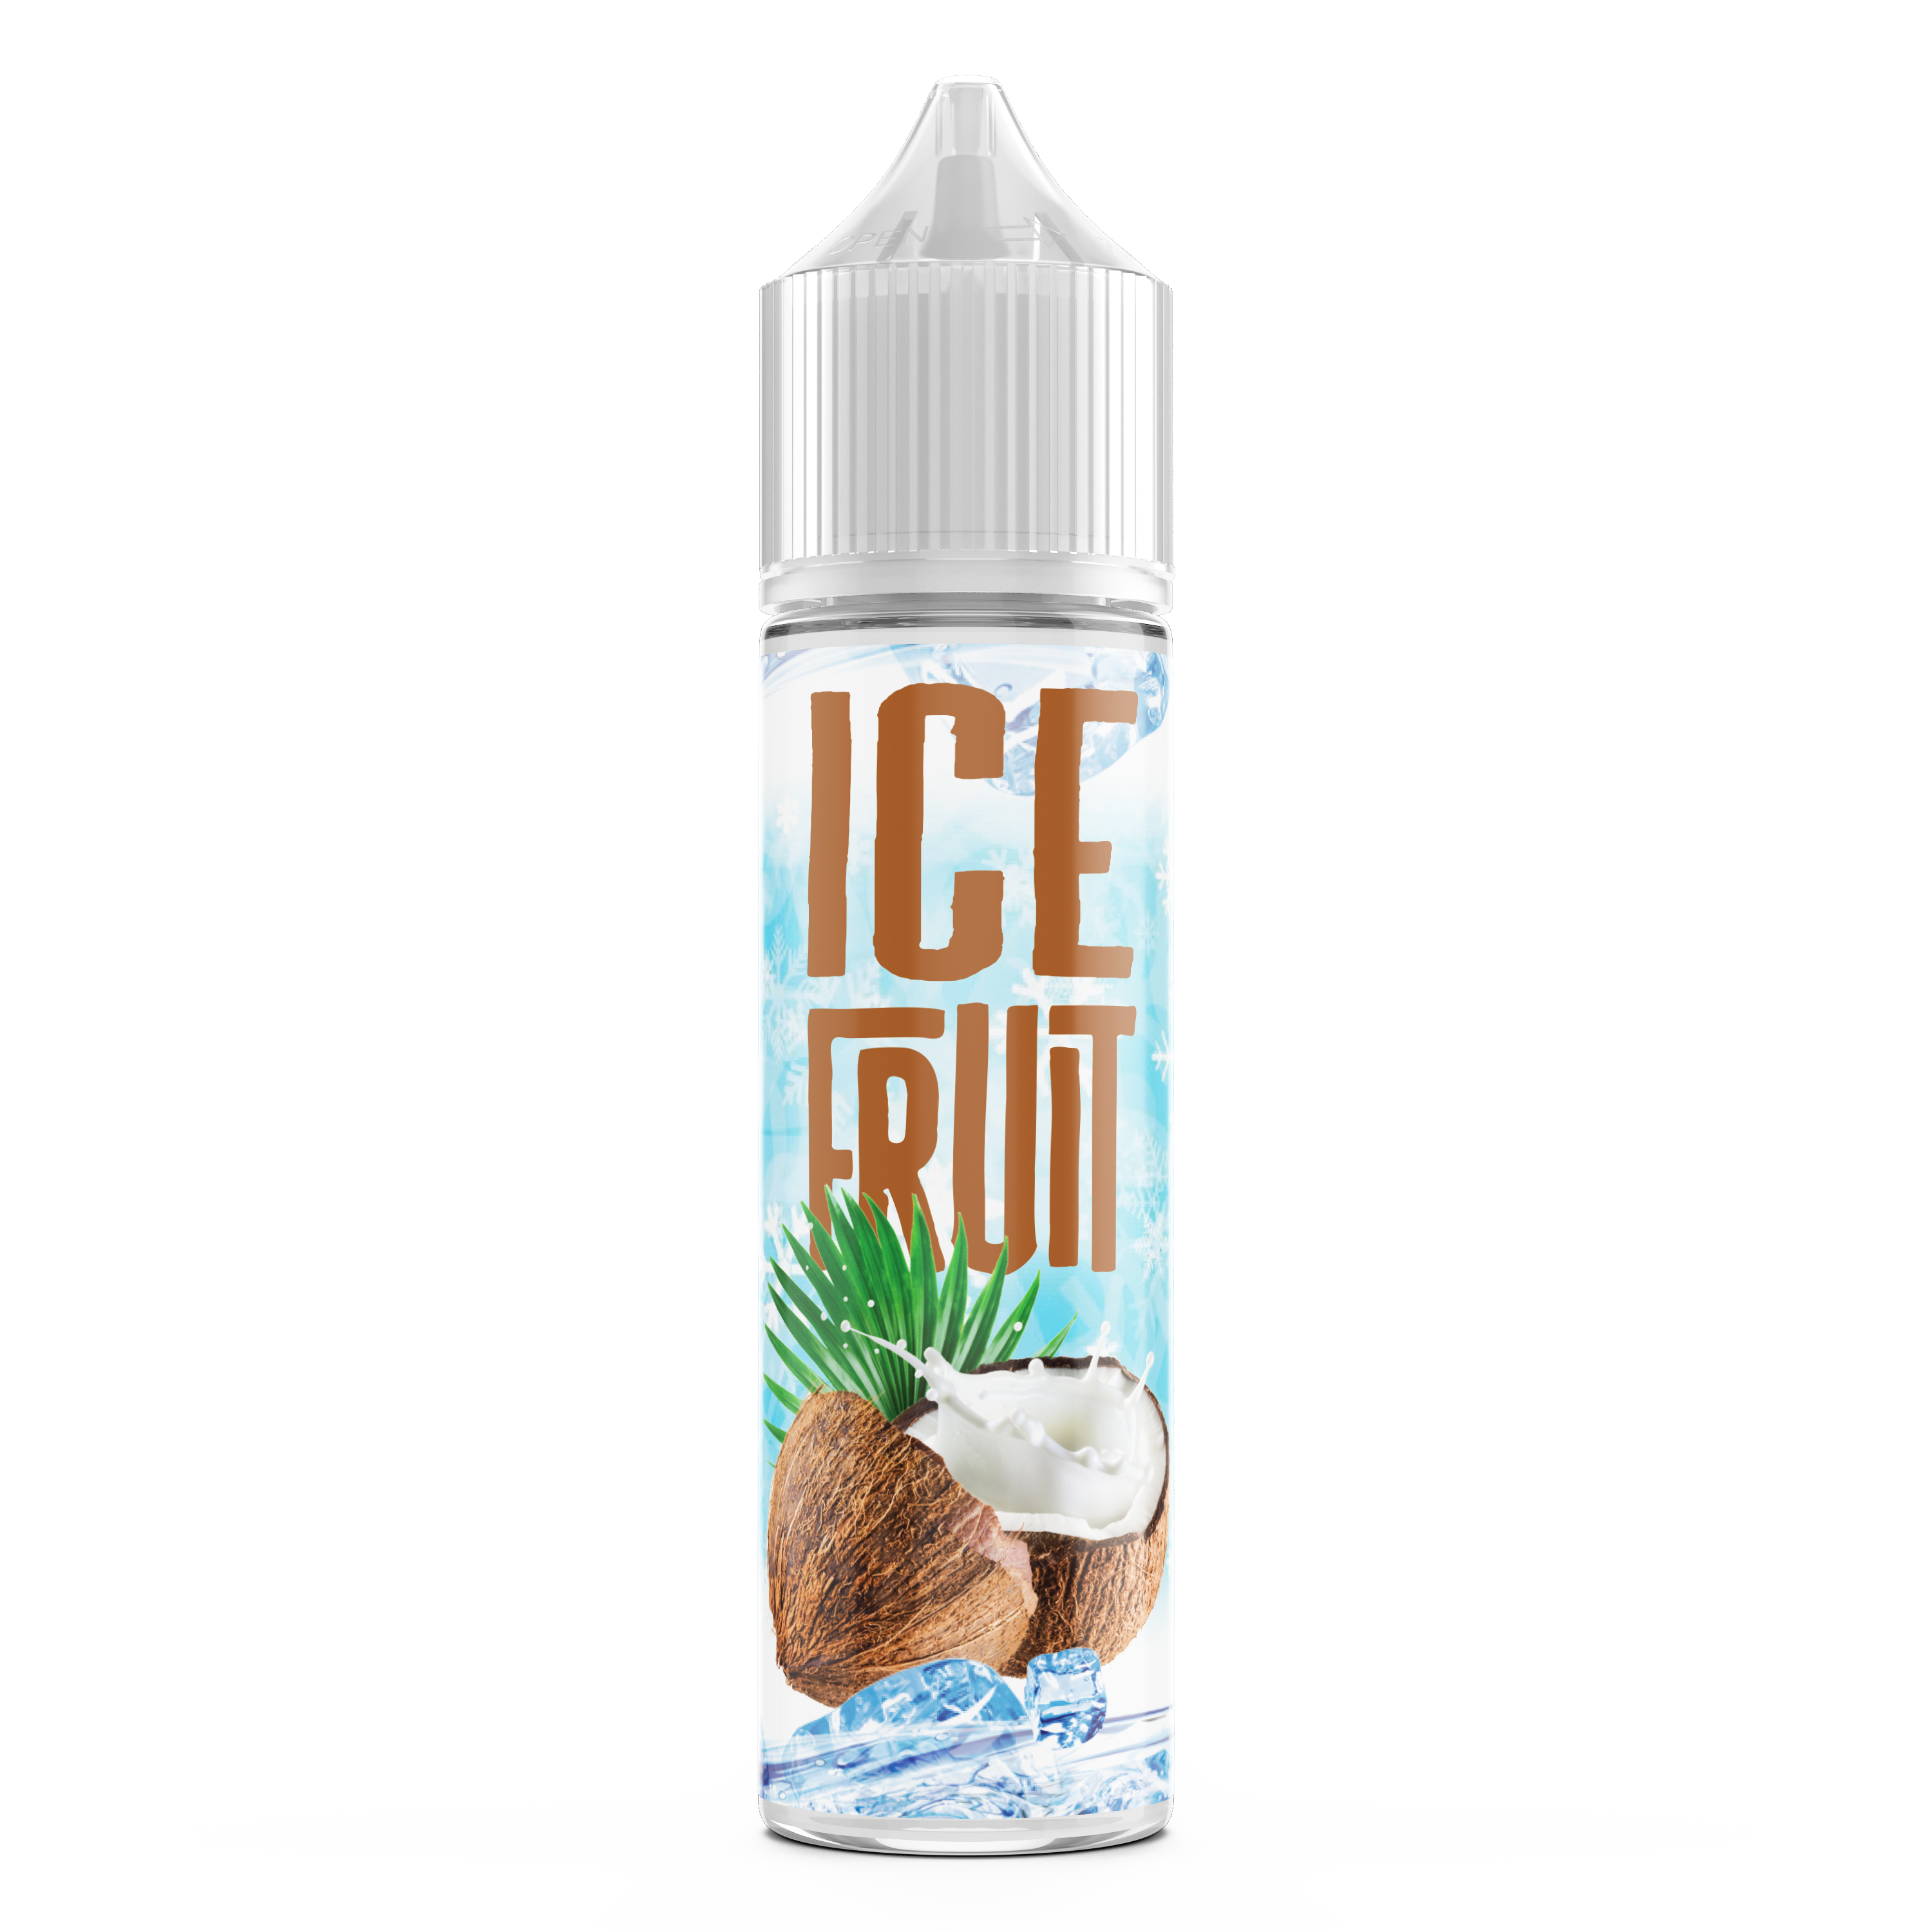 ICE FRUIT Kokosnoot Long Fill - Flavormonks